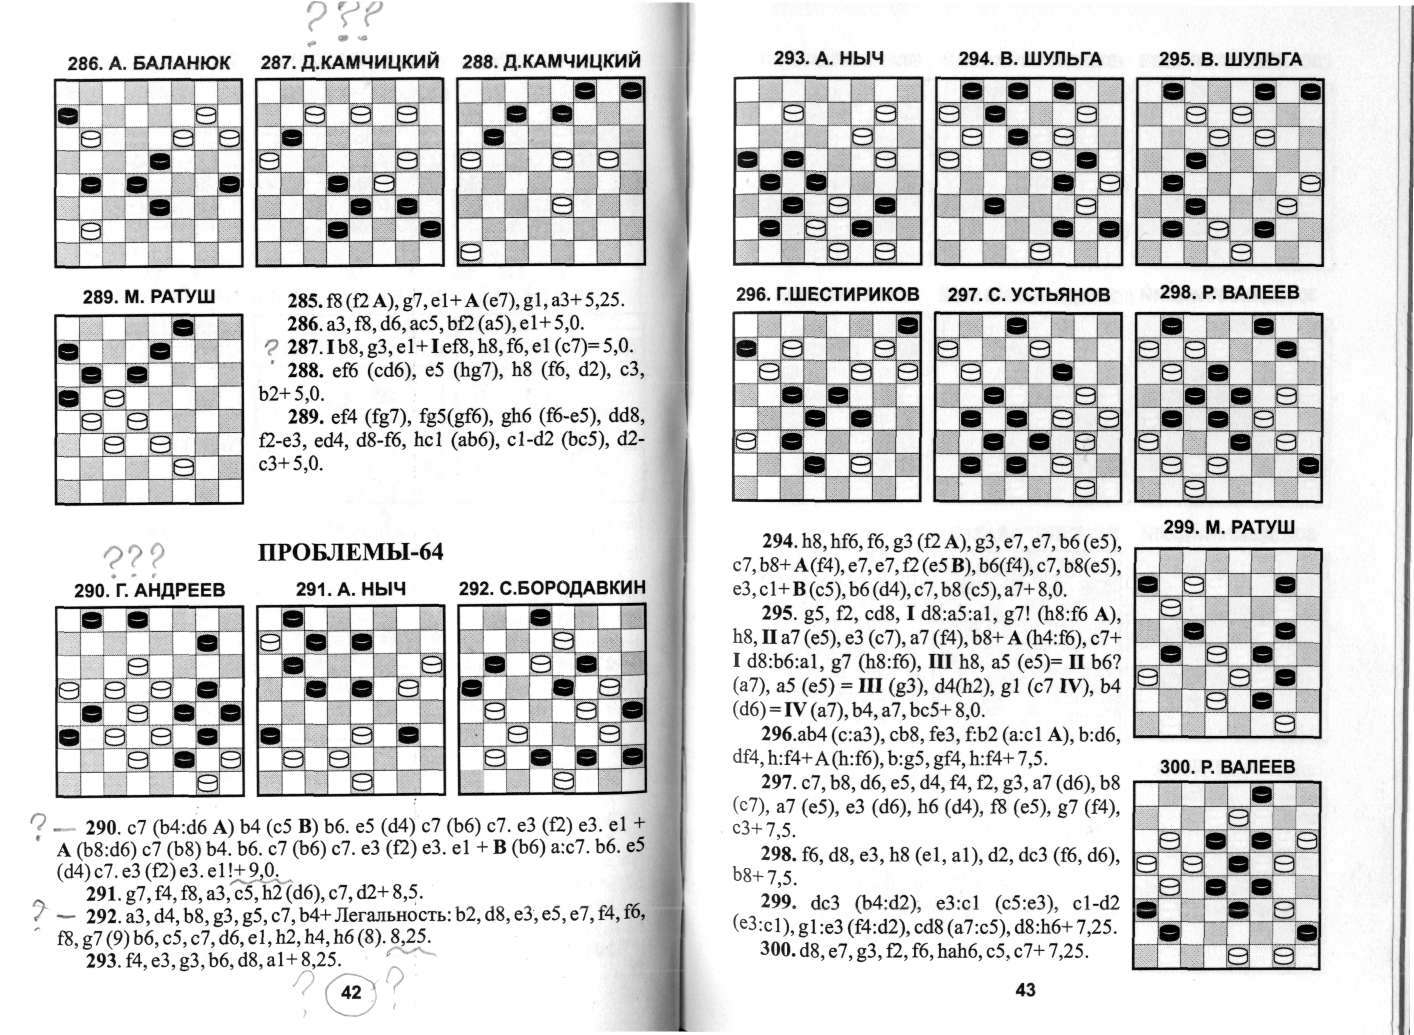 КОГОТЬКО_По следам шашечной композиции_page-0022.jpg